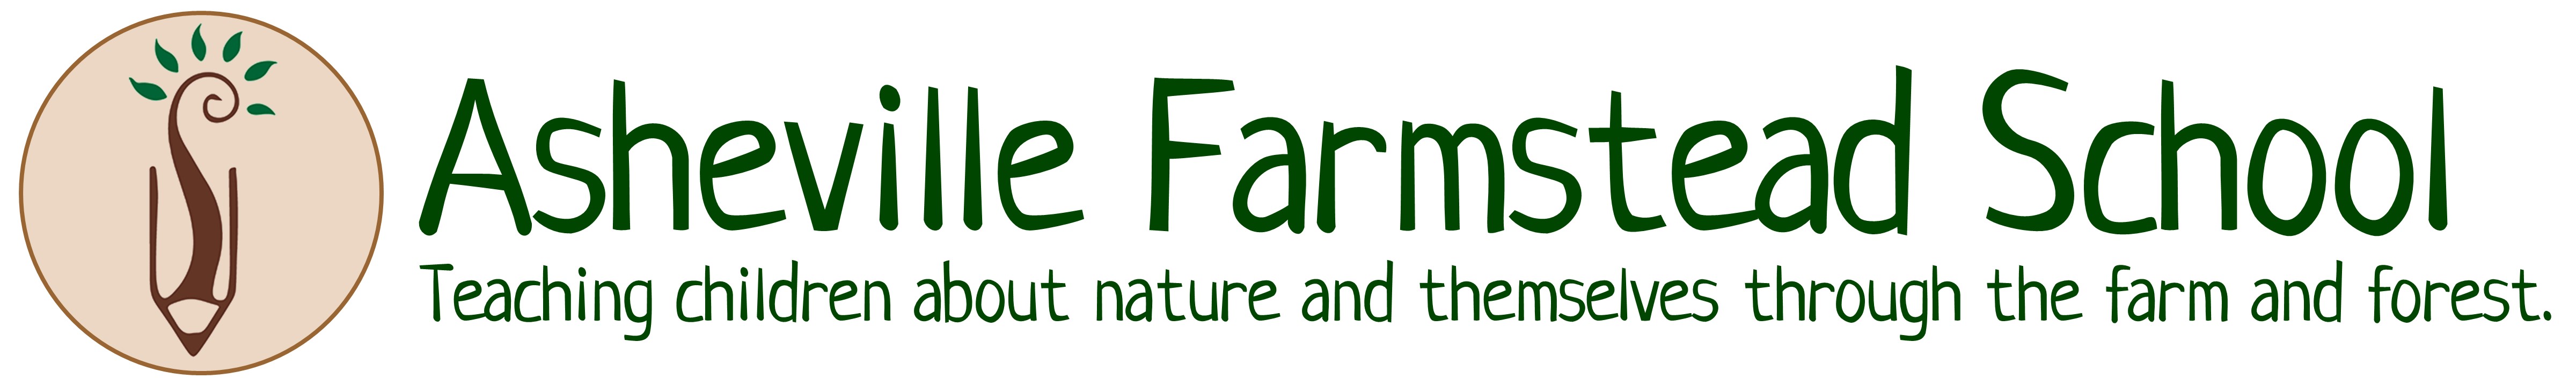 Asheville Farmstead School logo